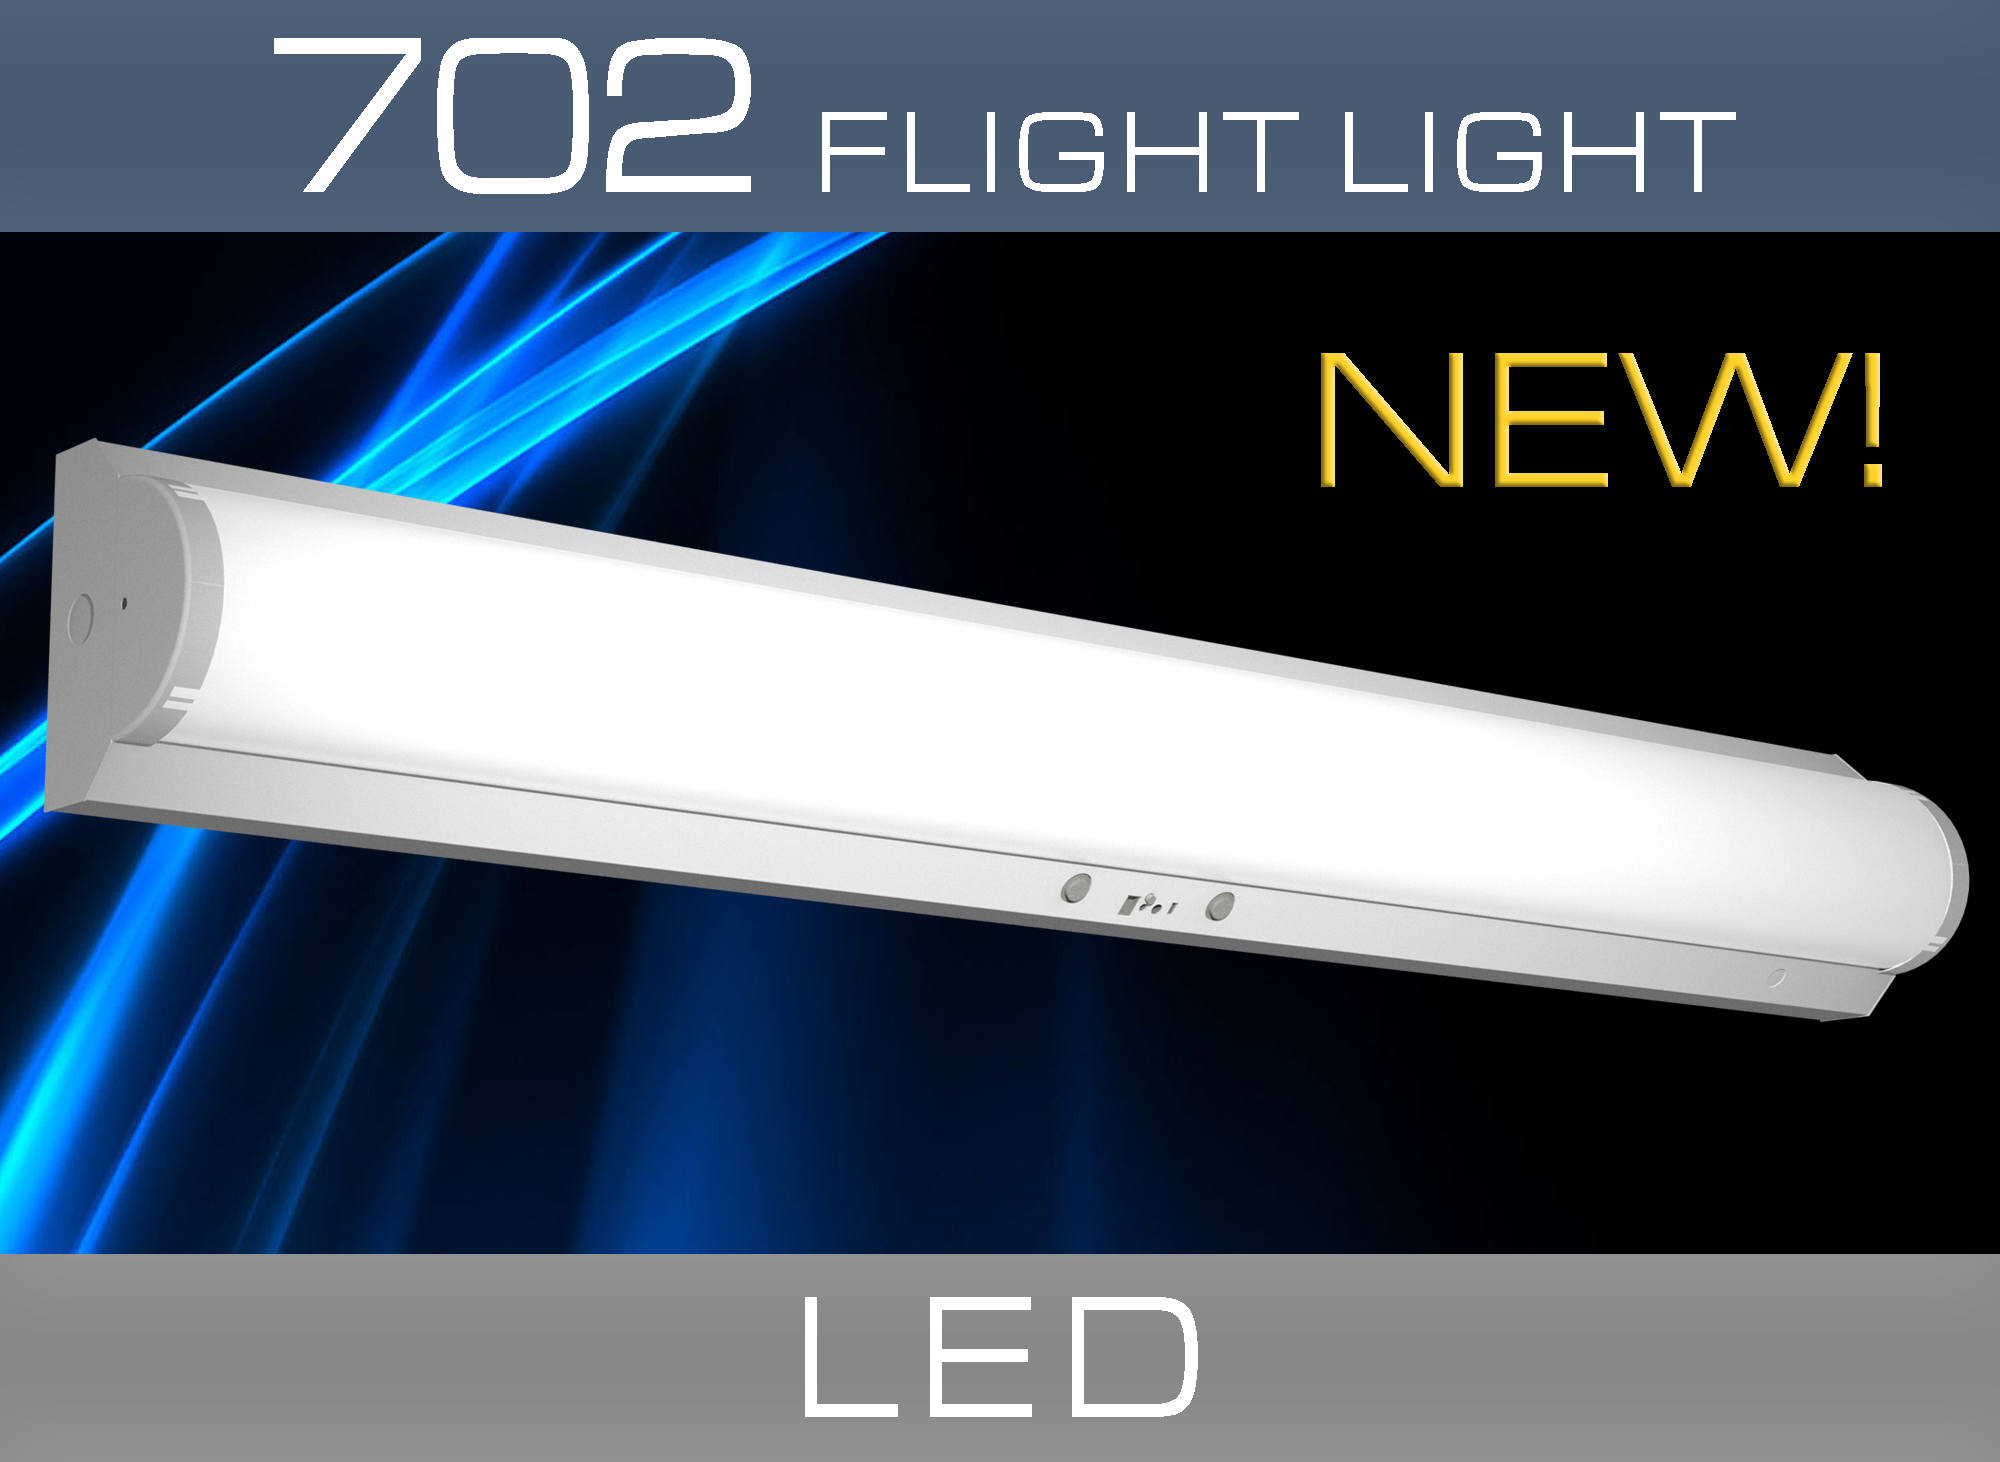 702 FLIGHT LIGHT